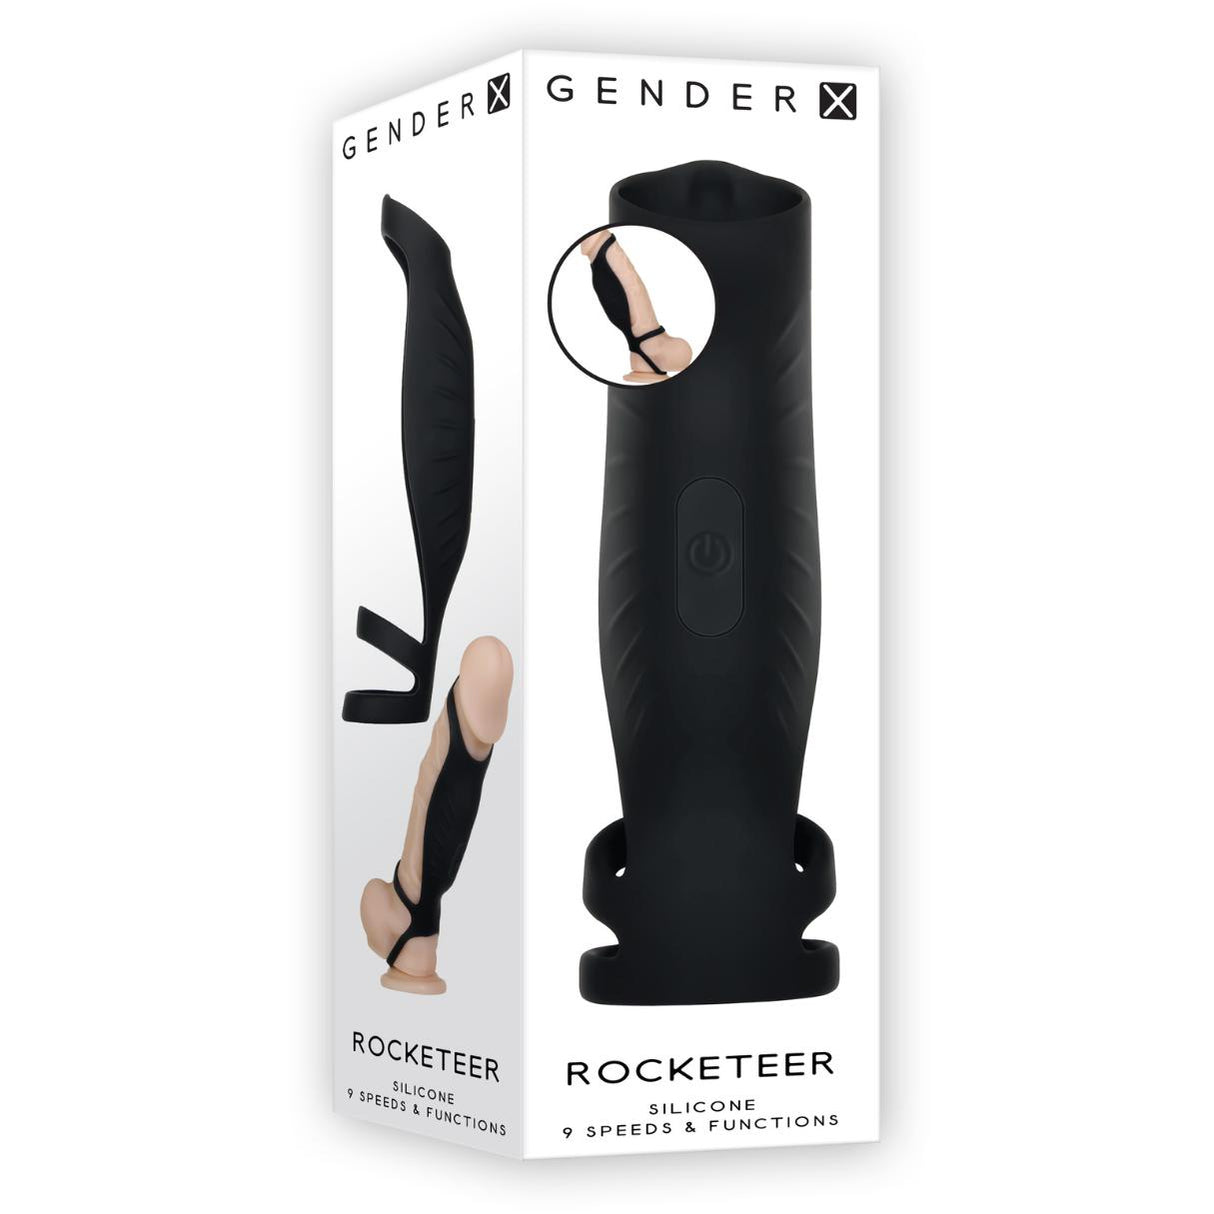 Gender X Rocketeer Vibrating Shaft Sleeve